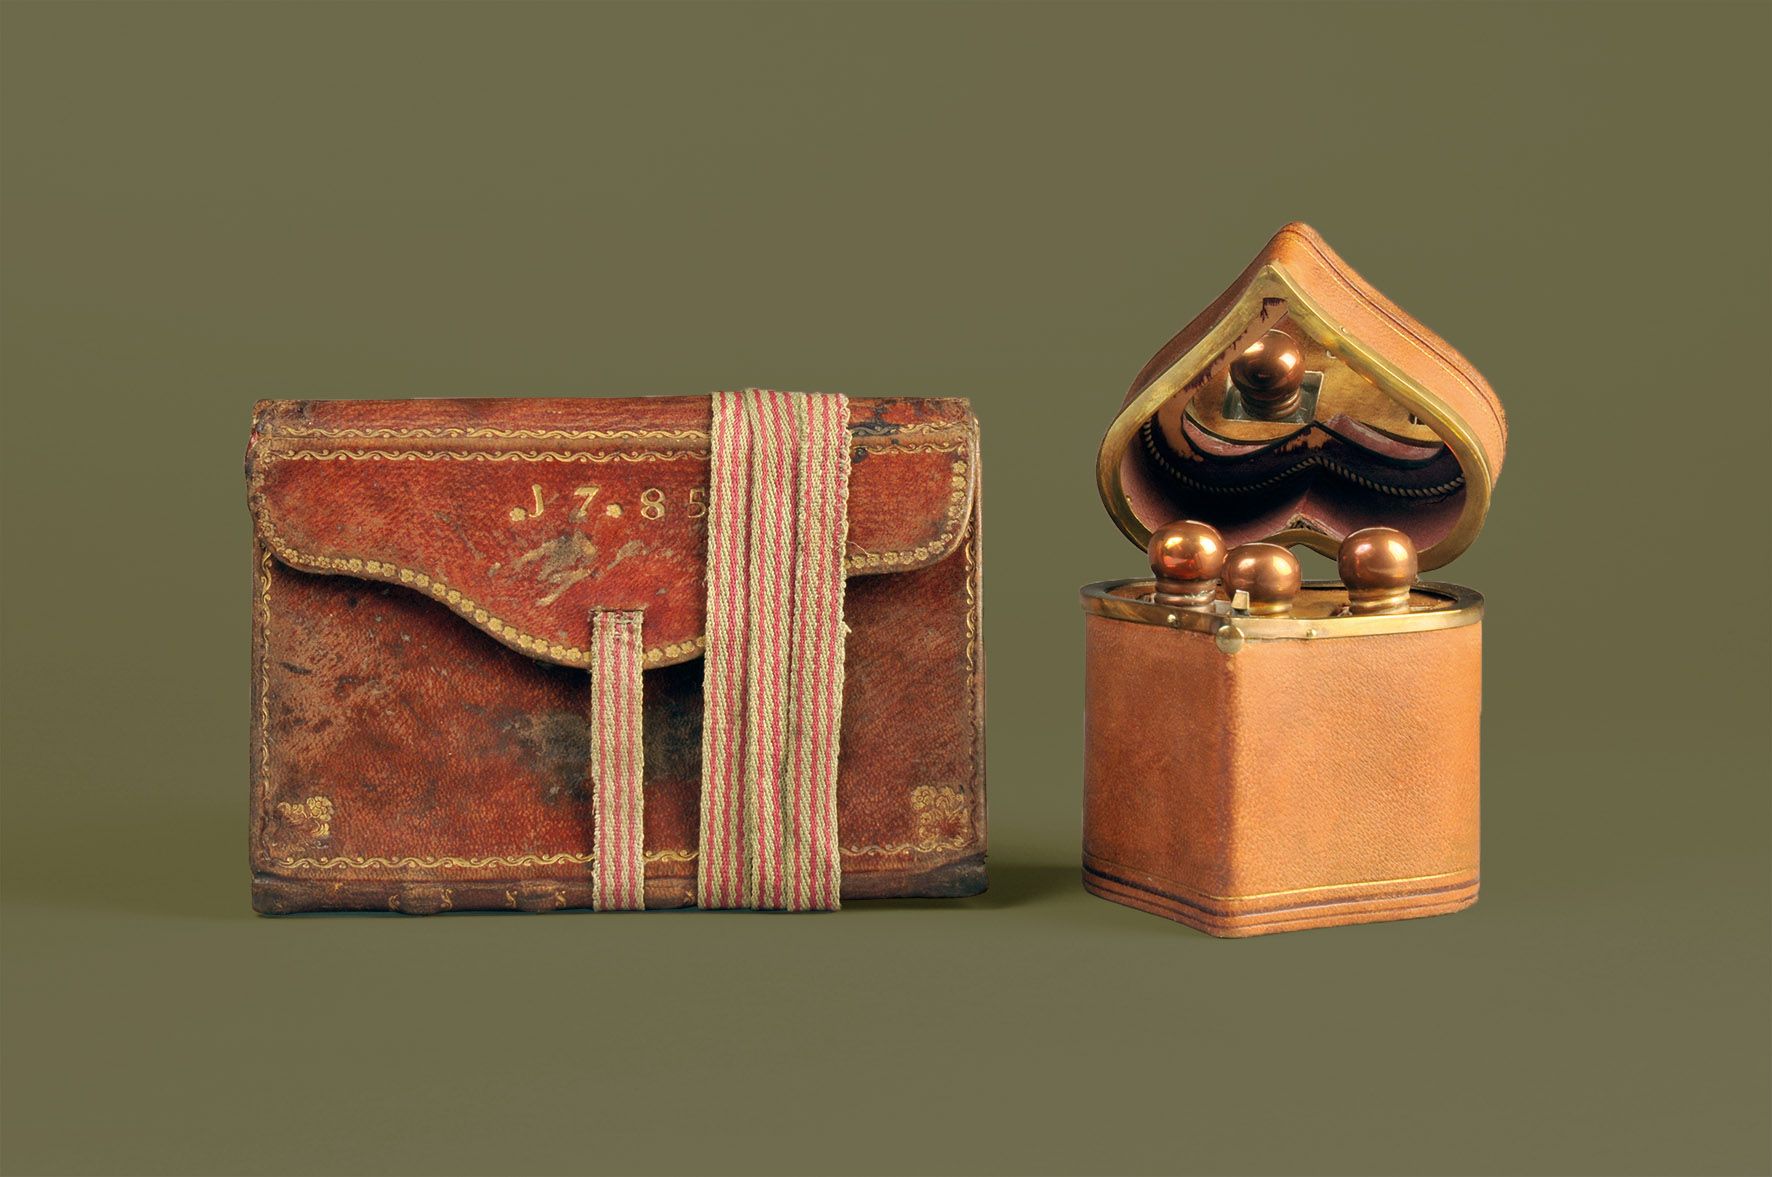 Brieftasche mit Überschlag, Offenbach am Main, um 1785 und Offenbacher Herzchen, Offenbach am Main, um 1870 © Deutsches Ledermuseum, C. Perl-Appl